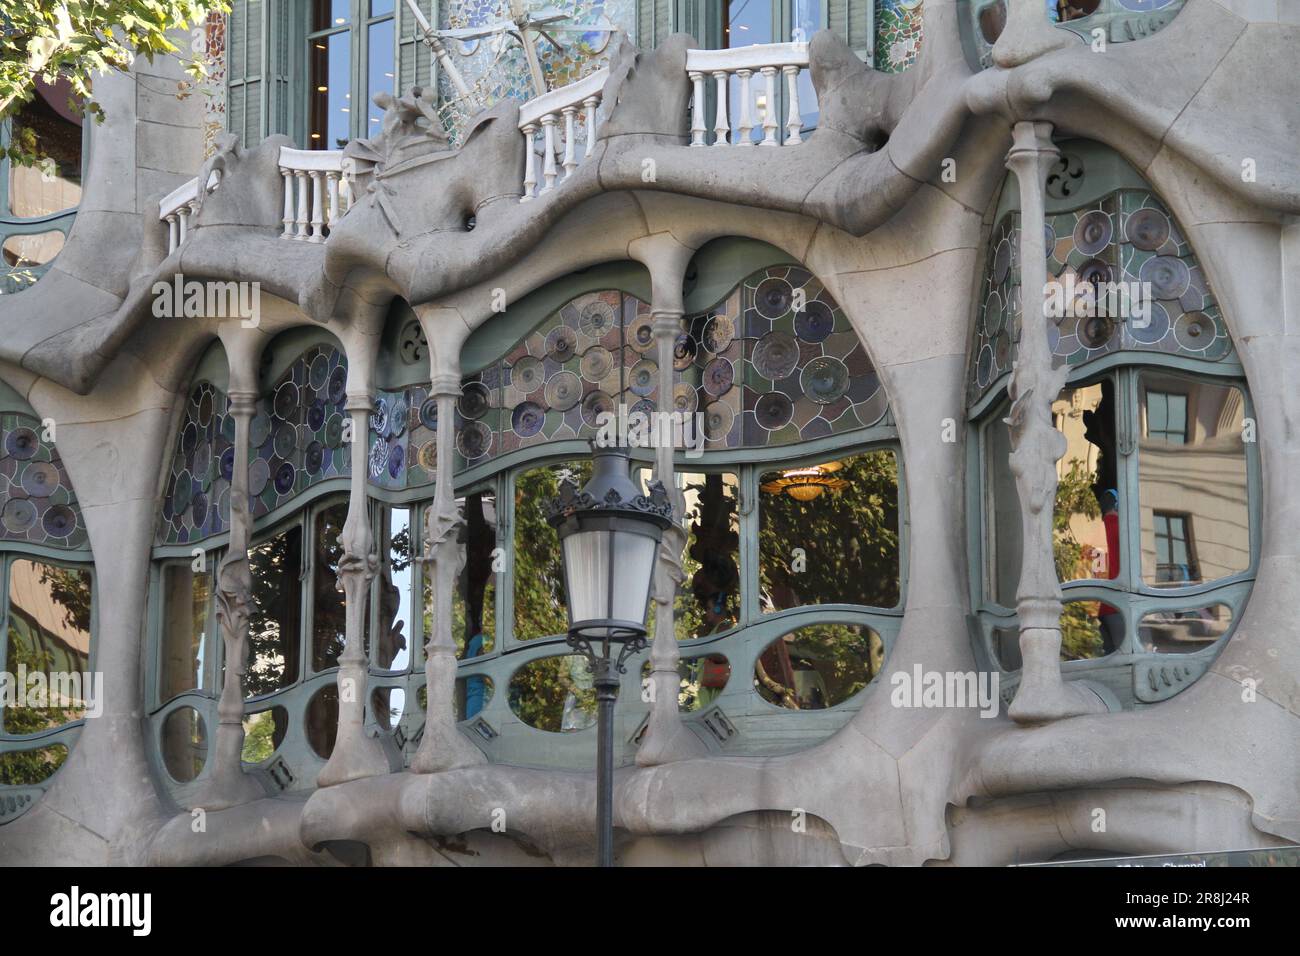 Découvrez l'esprit vibrant et les merveilles architecturales de Barcelone, où les chefs-d'œuvre modernistes créent une allure irrésistible Banque D'Images